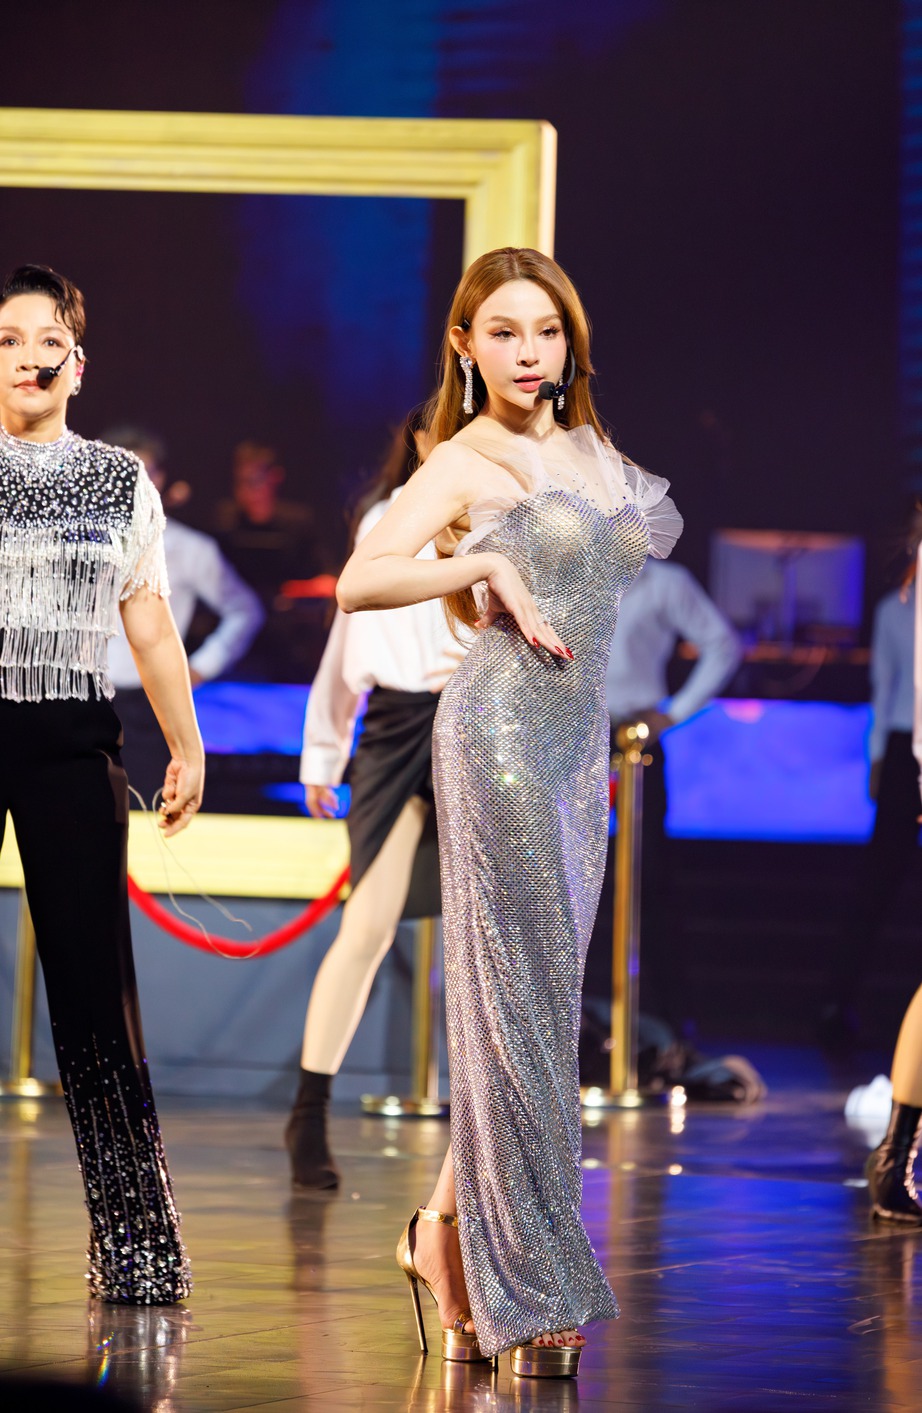 Diva Hồng Nhung, MLee cùng nhóm chị đẹp của mình hoá ma cà rồng - Ảnh 5.